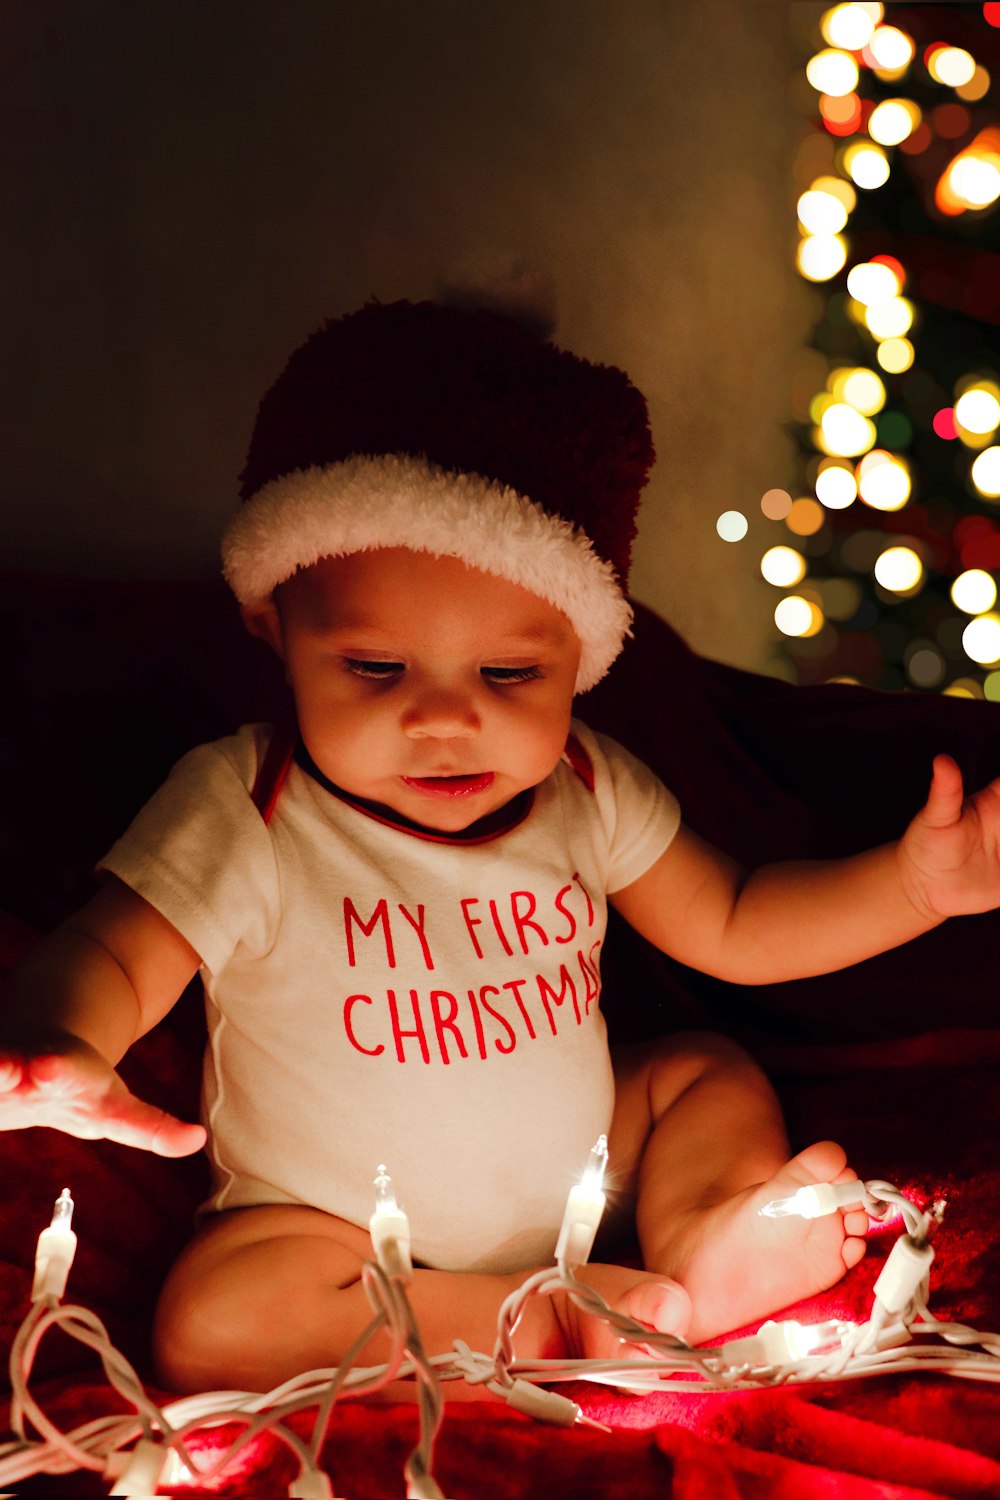 Un bebé sentado en una cama con un sombrero navideño puesto